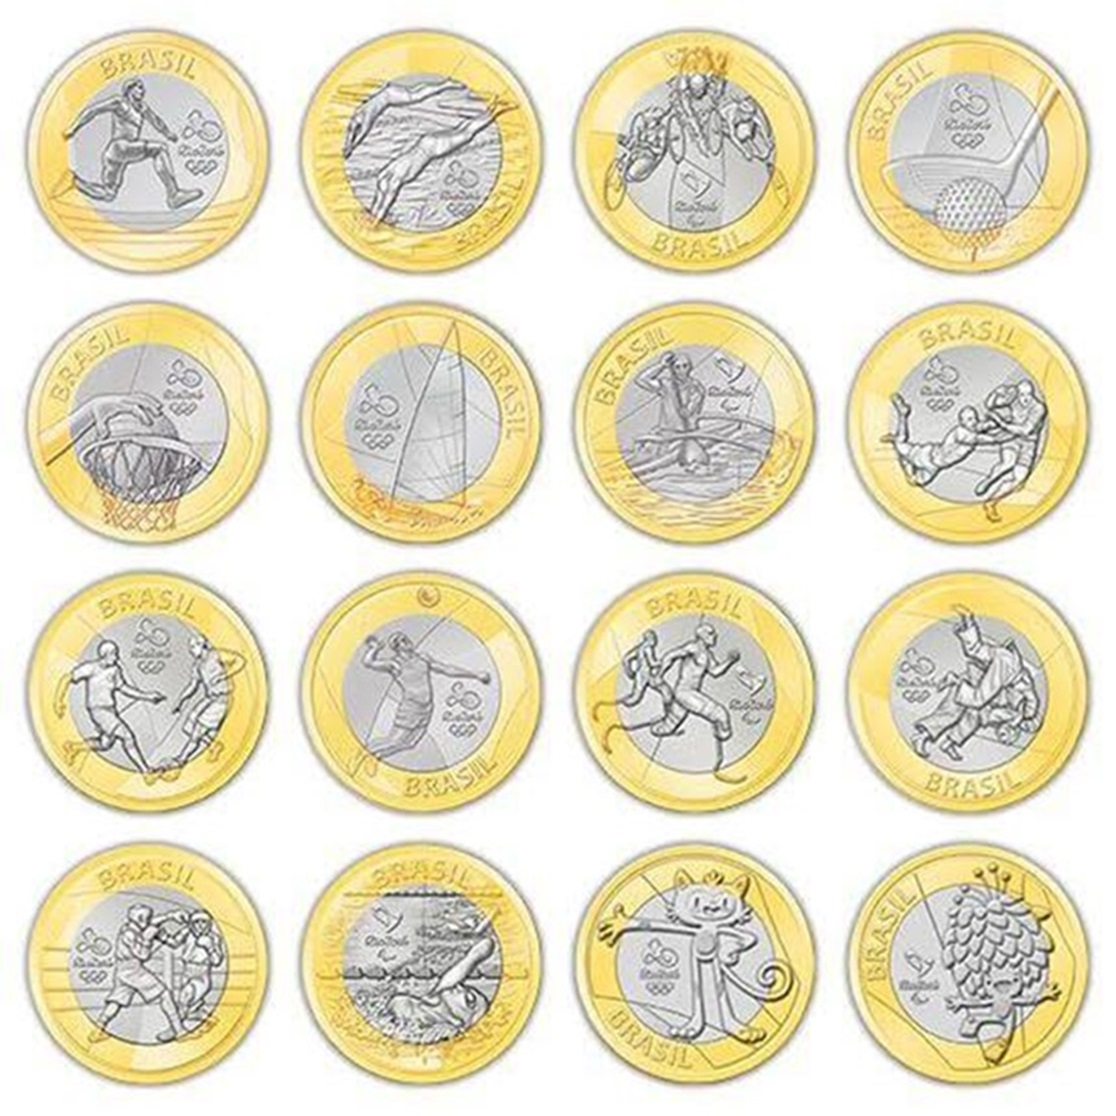 Descubra o quanto valem as moedas das Olimpíadas de 2016